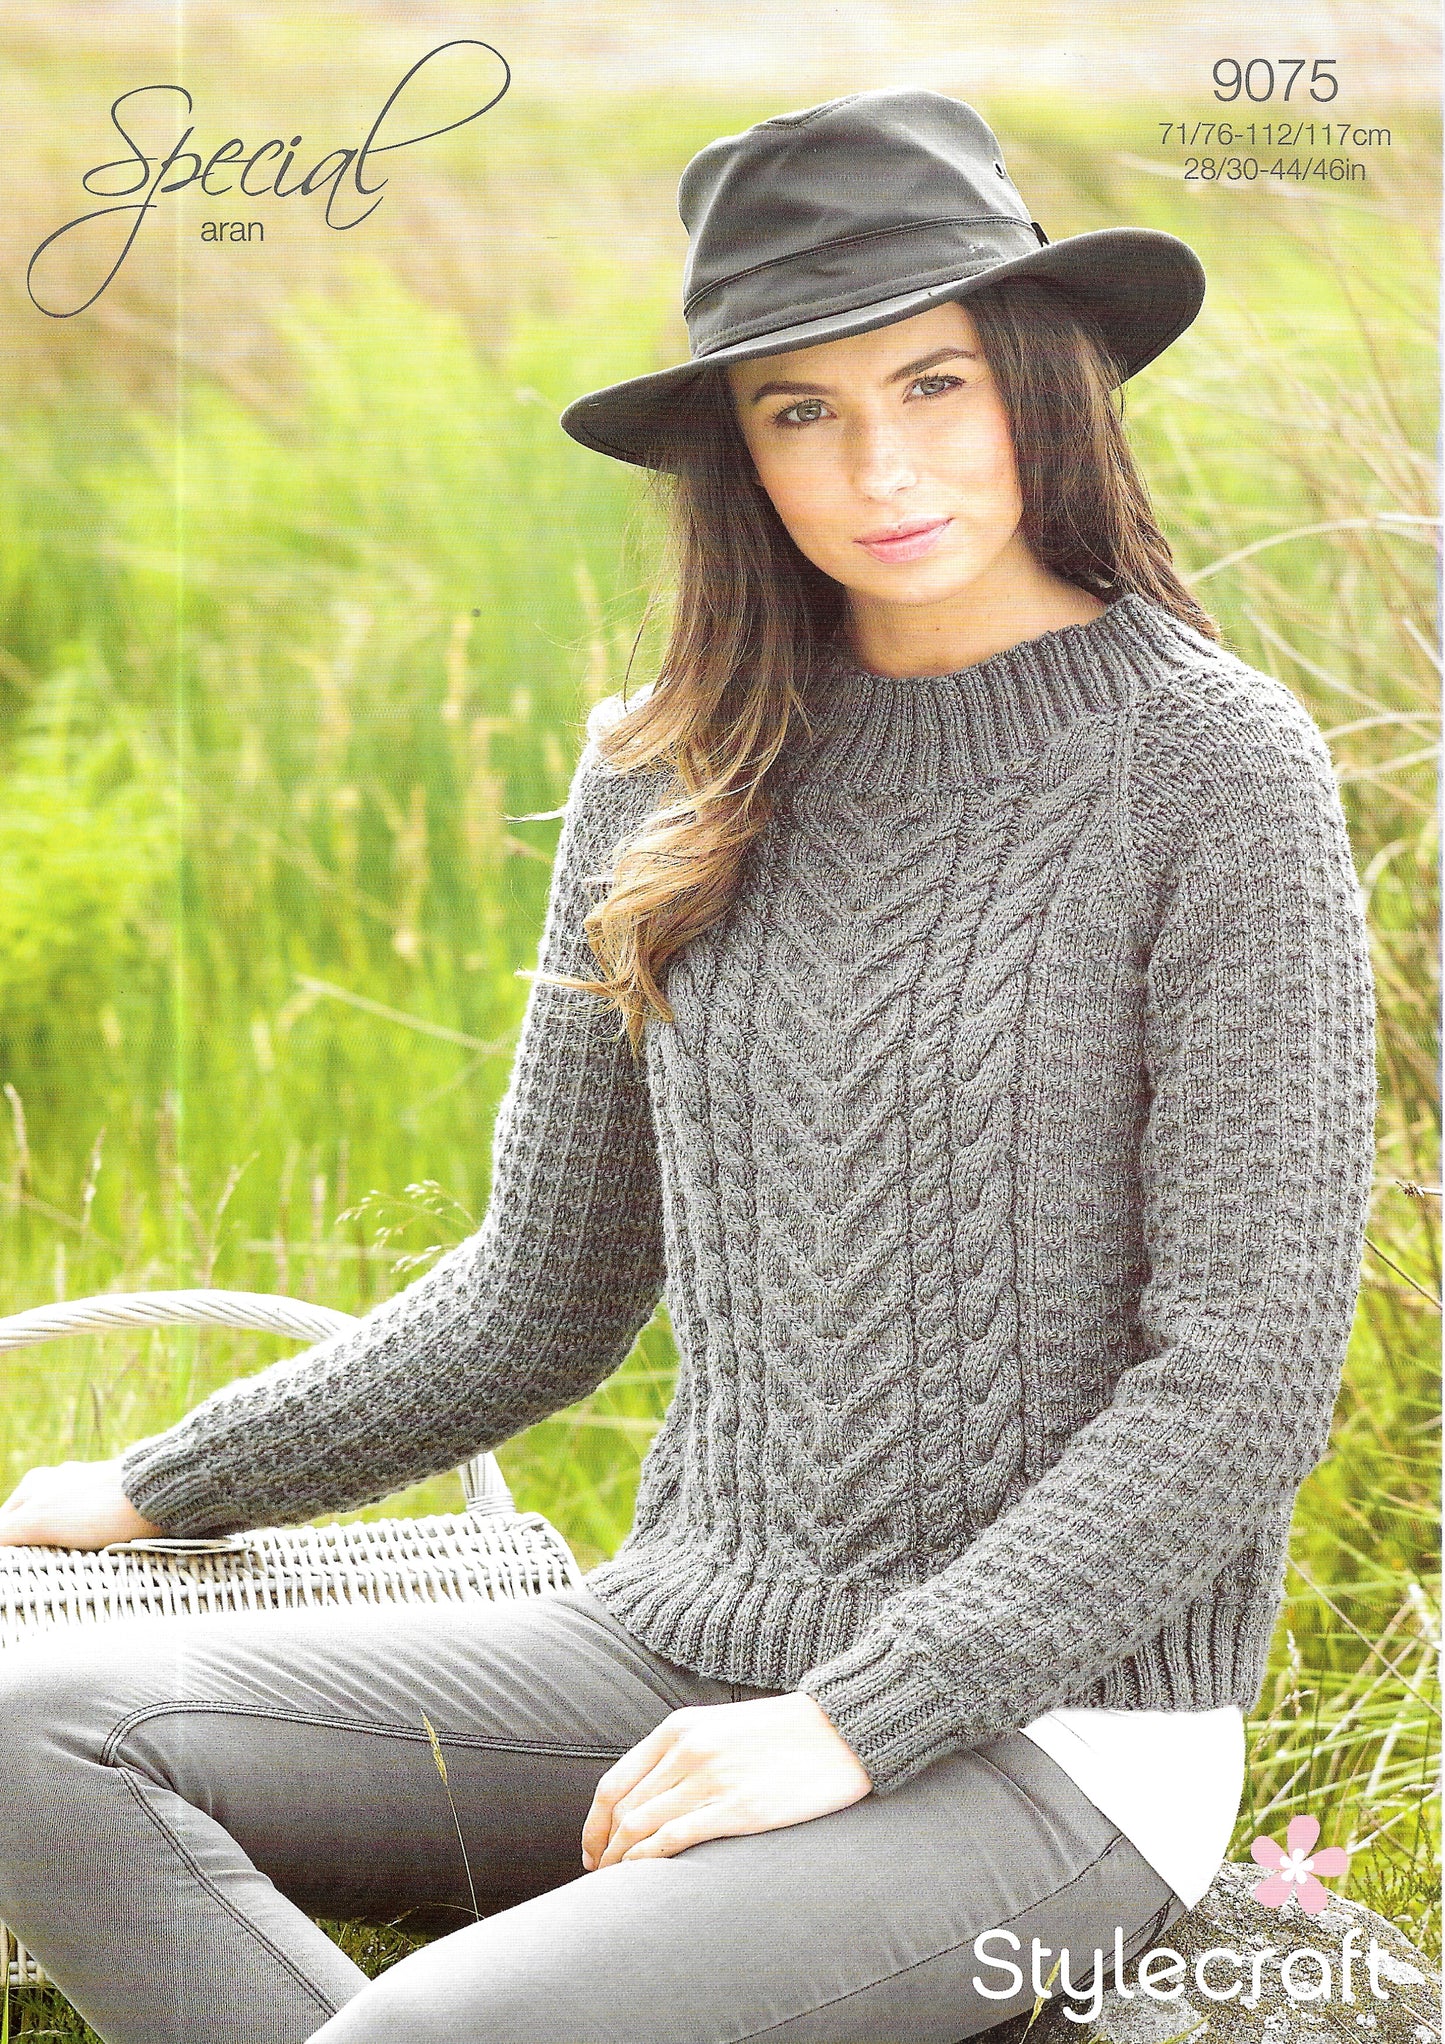 9075 Stylecraft knitting pattern. Lady's cable sweater Aran Yarn